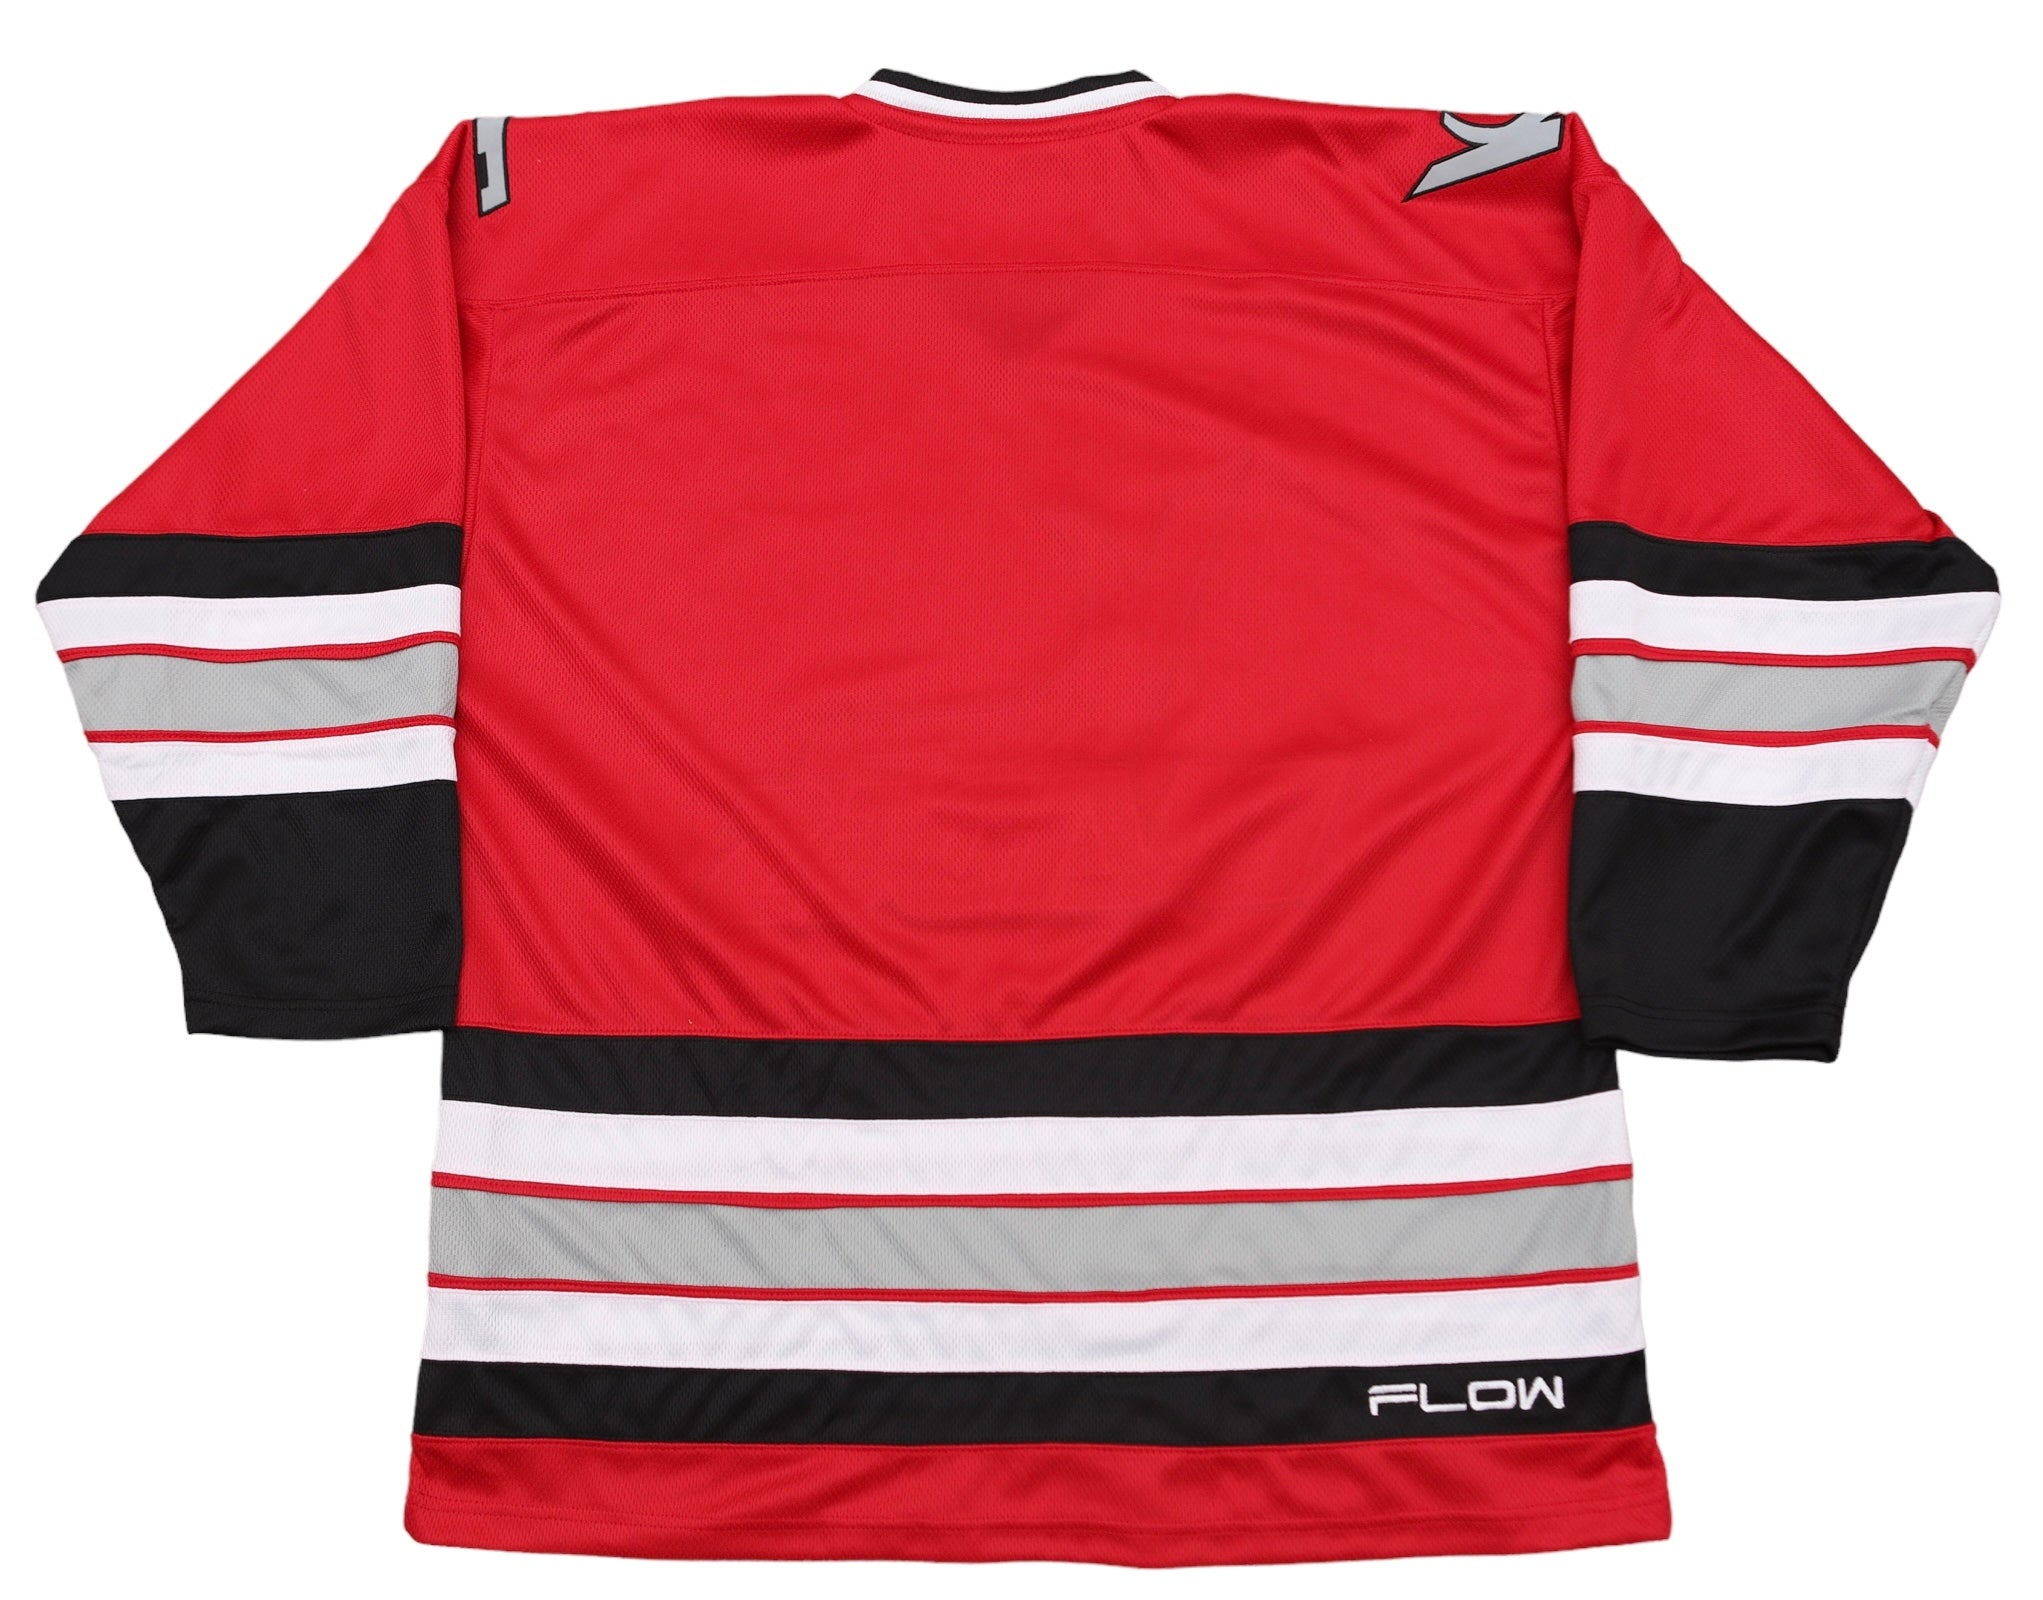 Louisville Riverfrogs jersey : r/hockeyjerseys